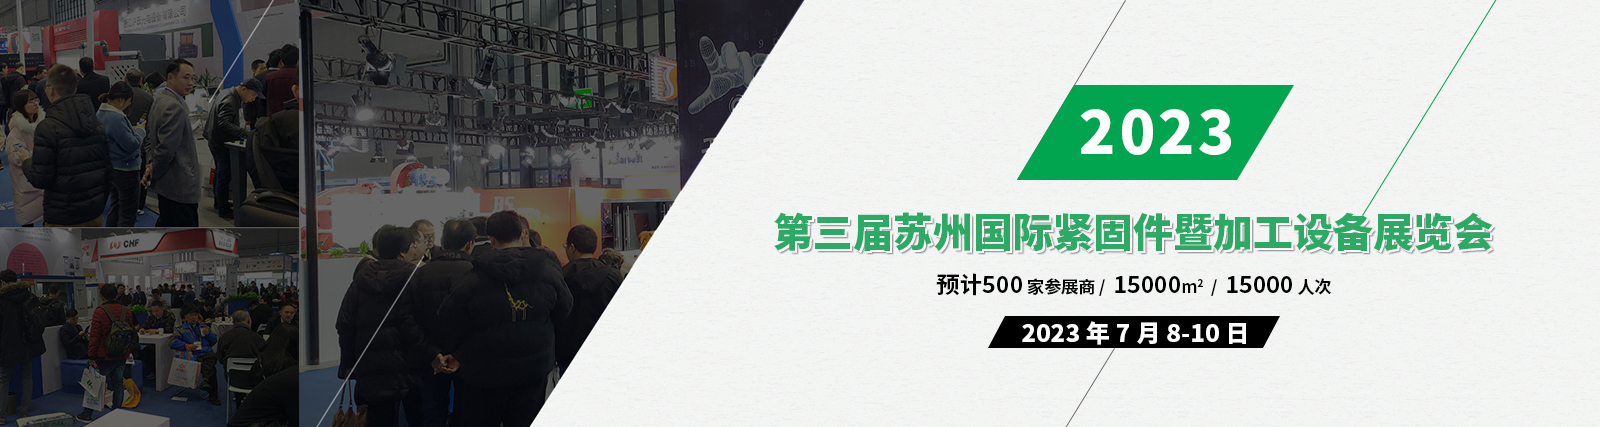 2023第三届苏州国际紧固件暨加工设备展览会